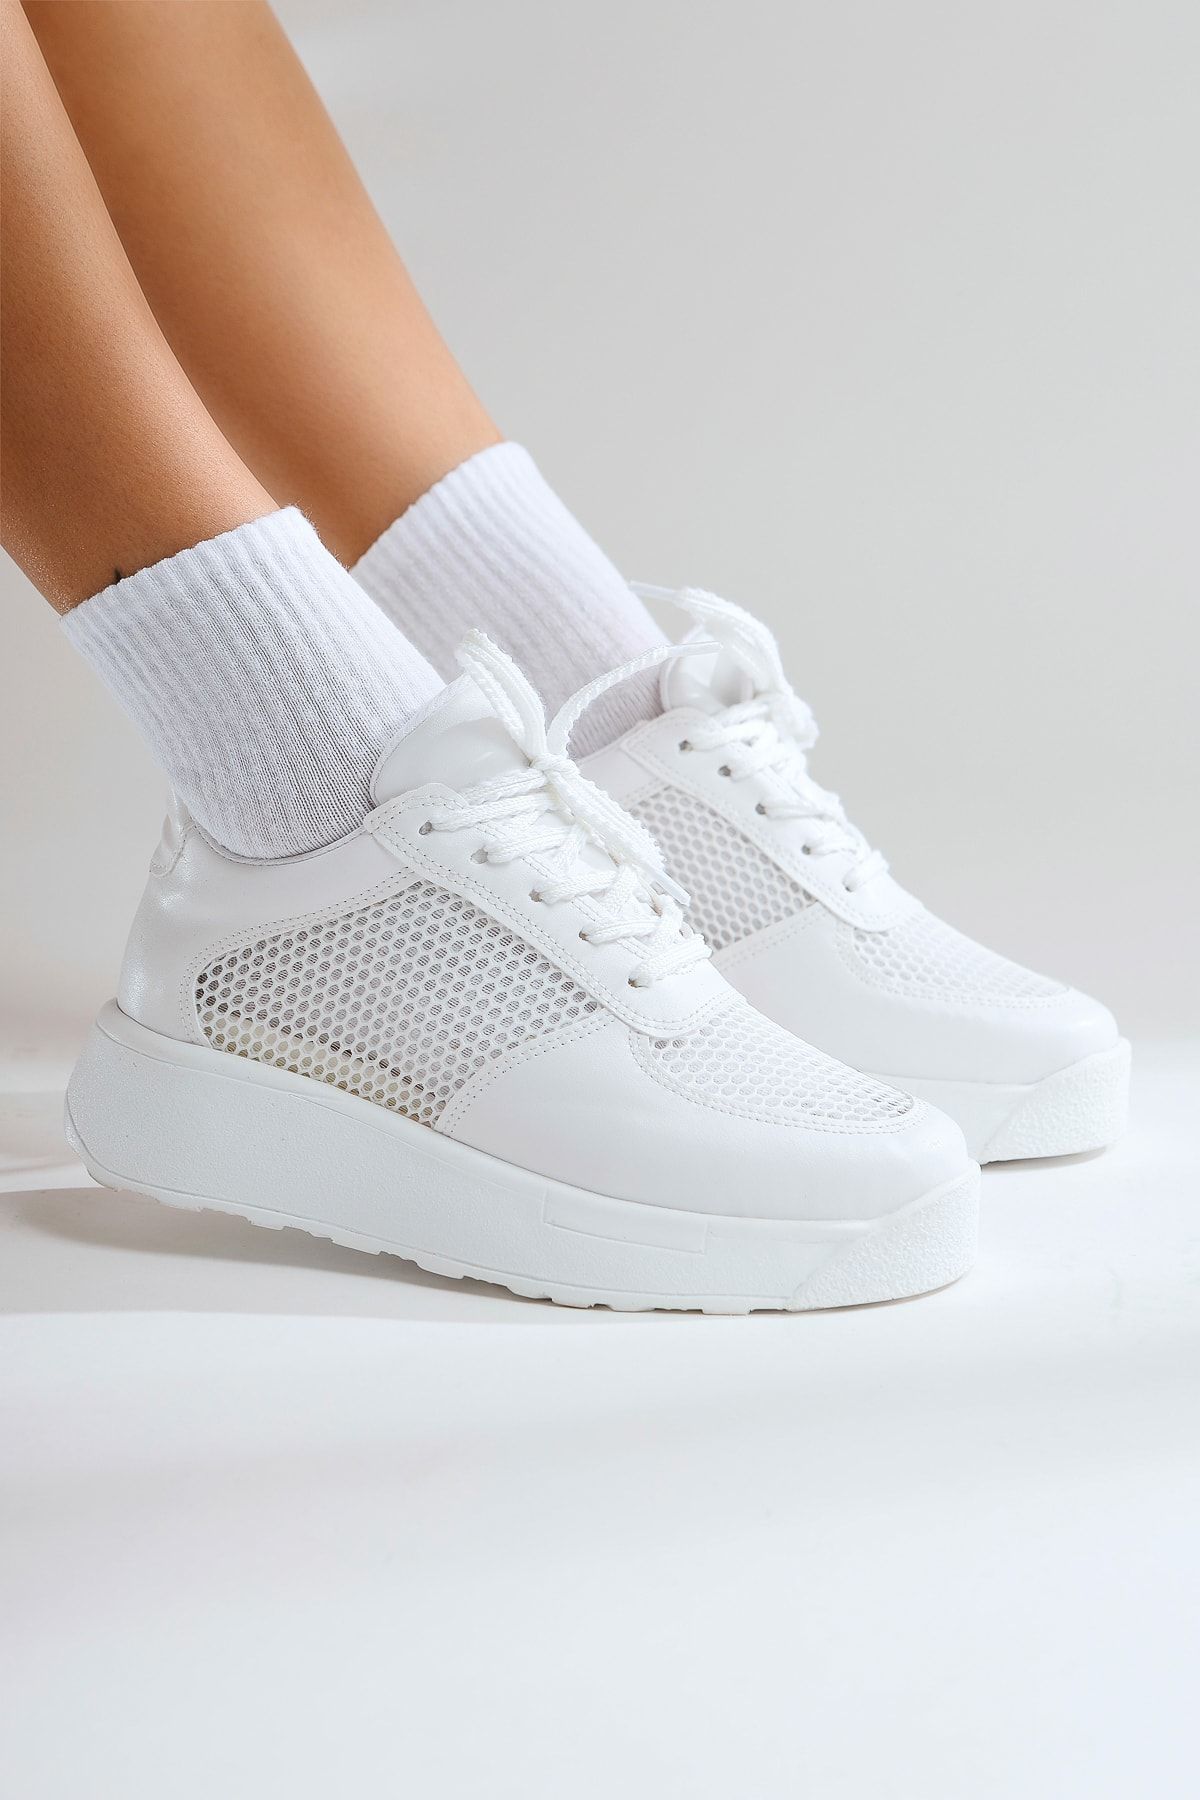 Limoya Kany Beyaz Fileli Sneakers Spor Ayakkabı